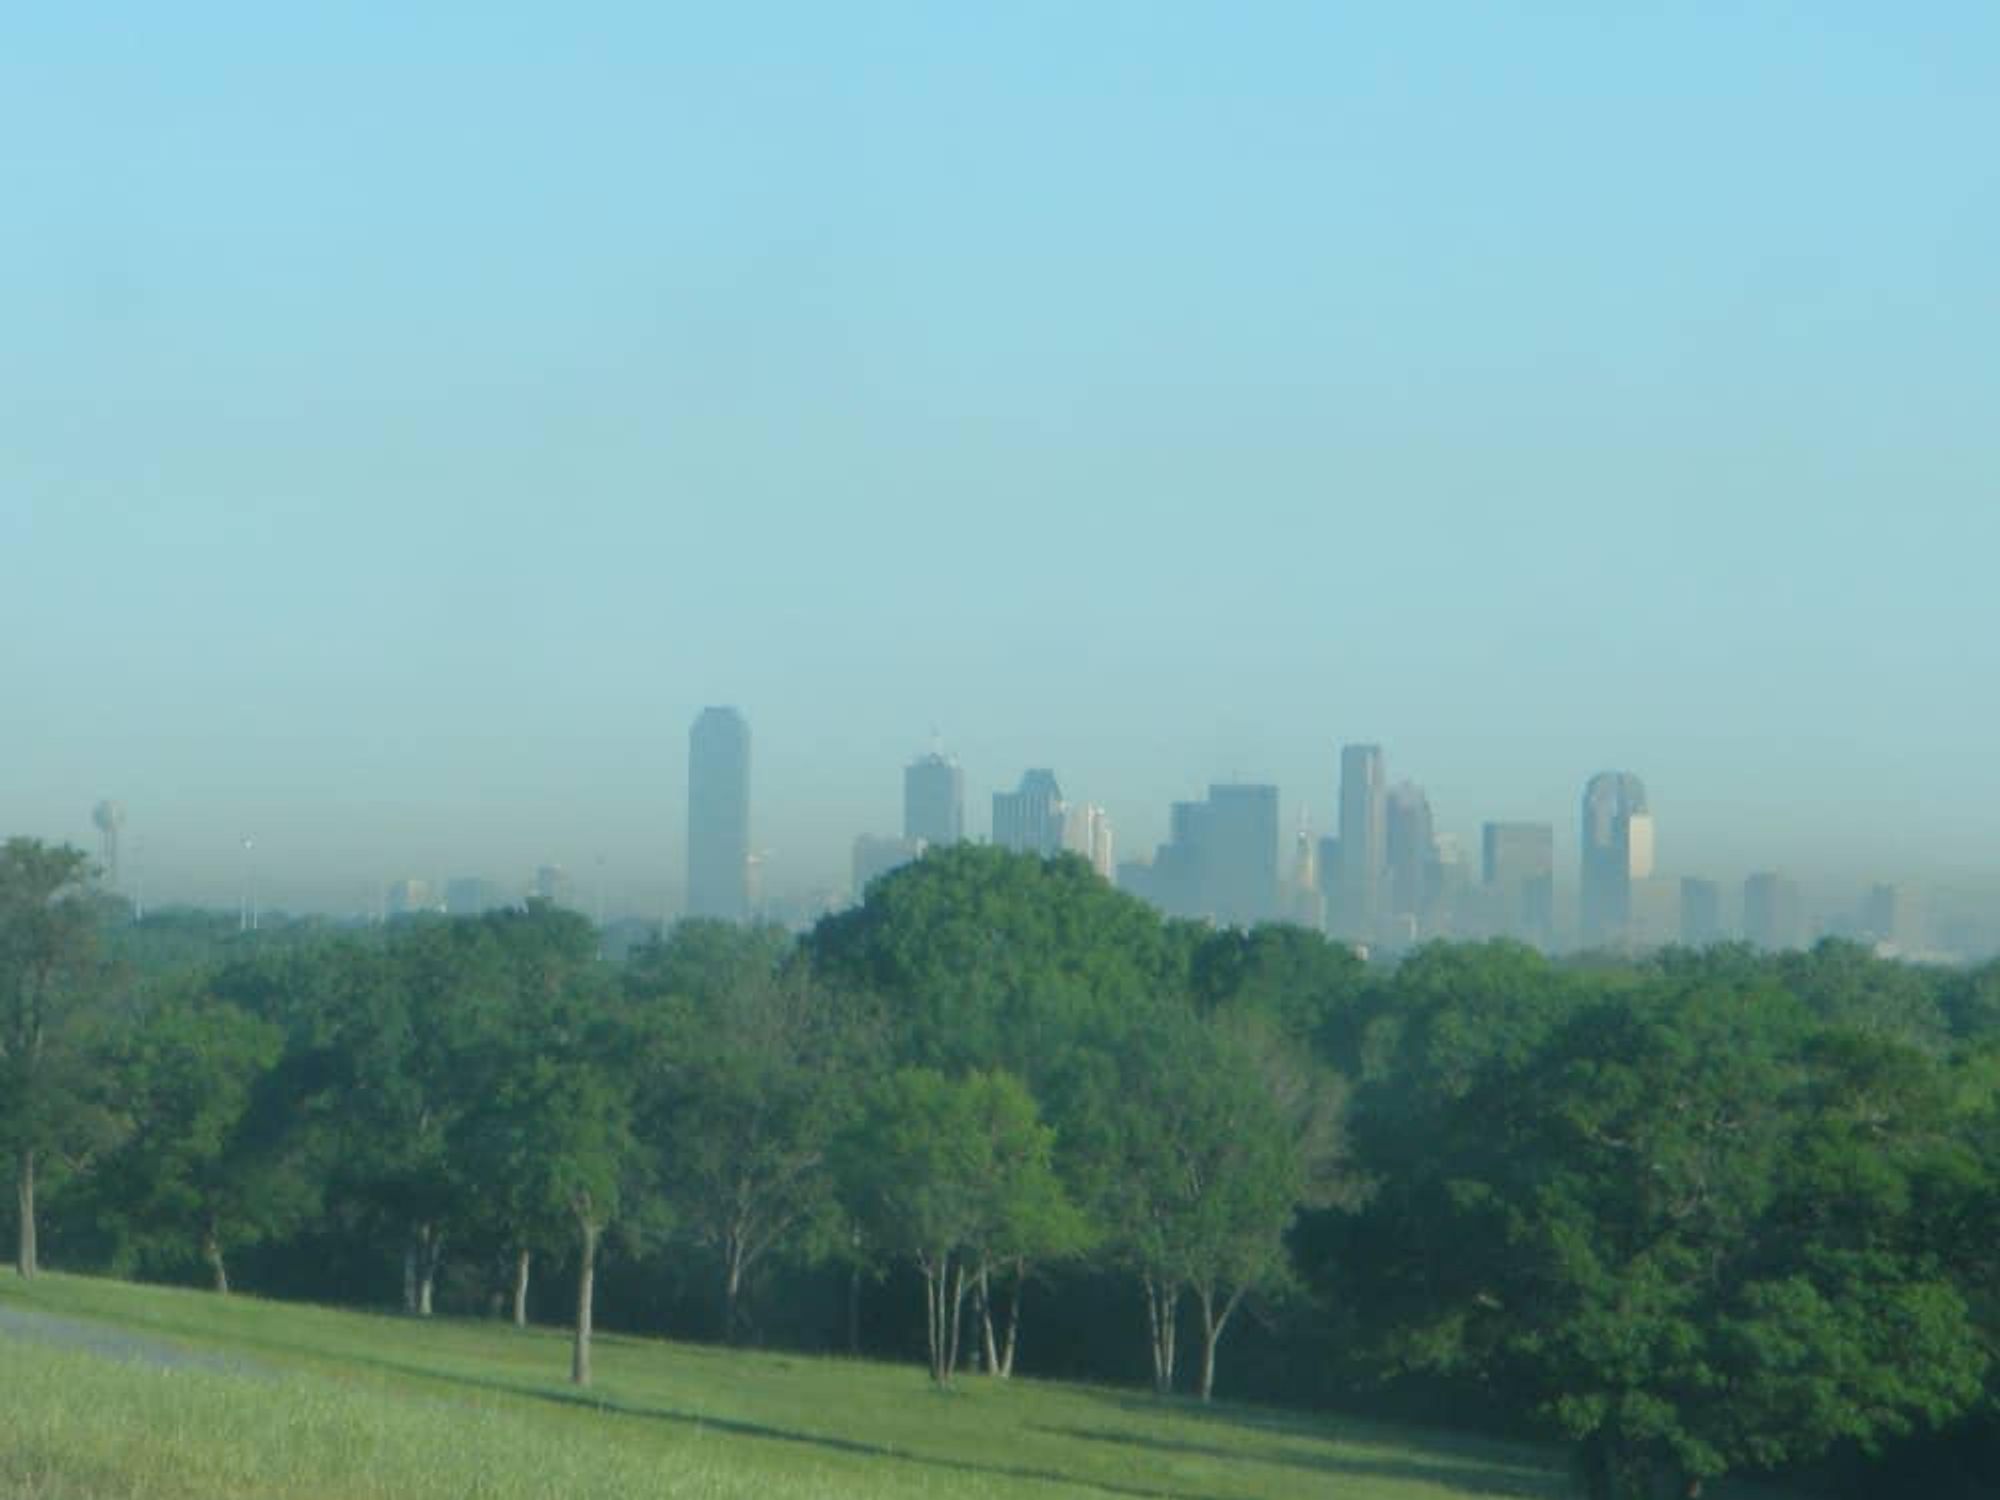 Smog in Dallas, Texas